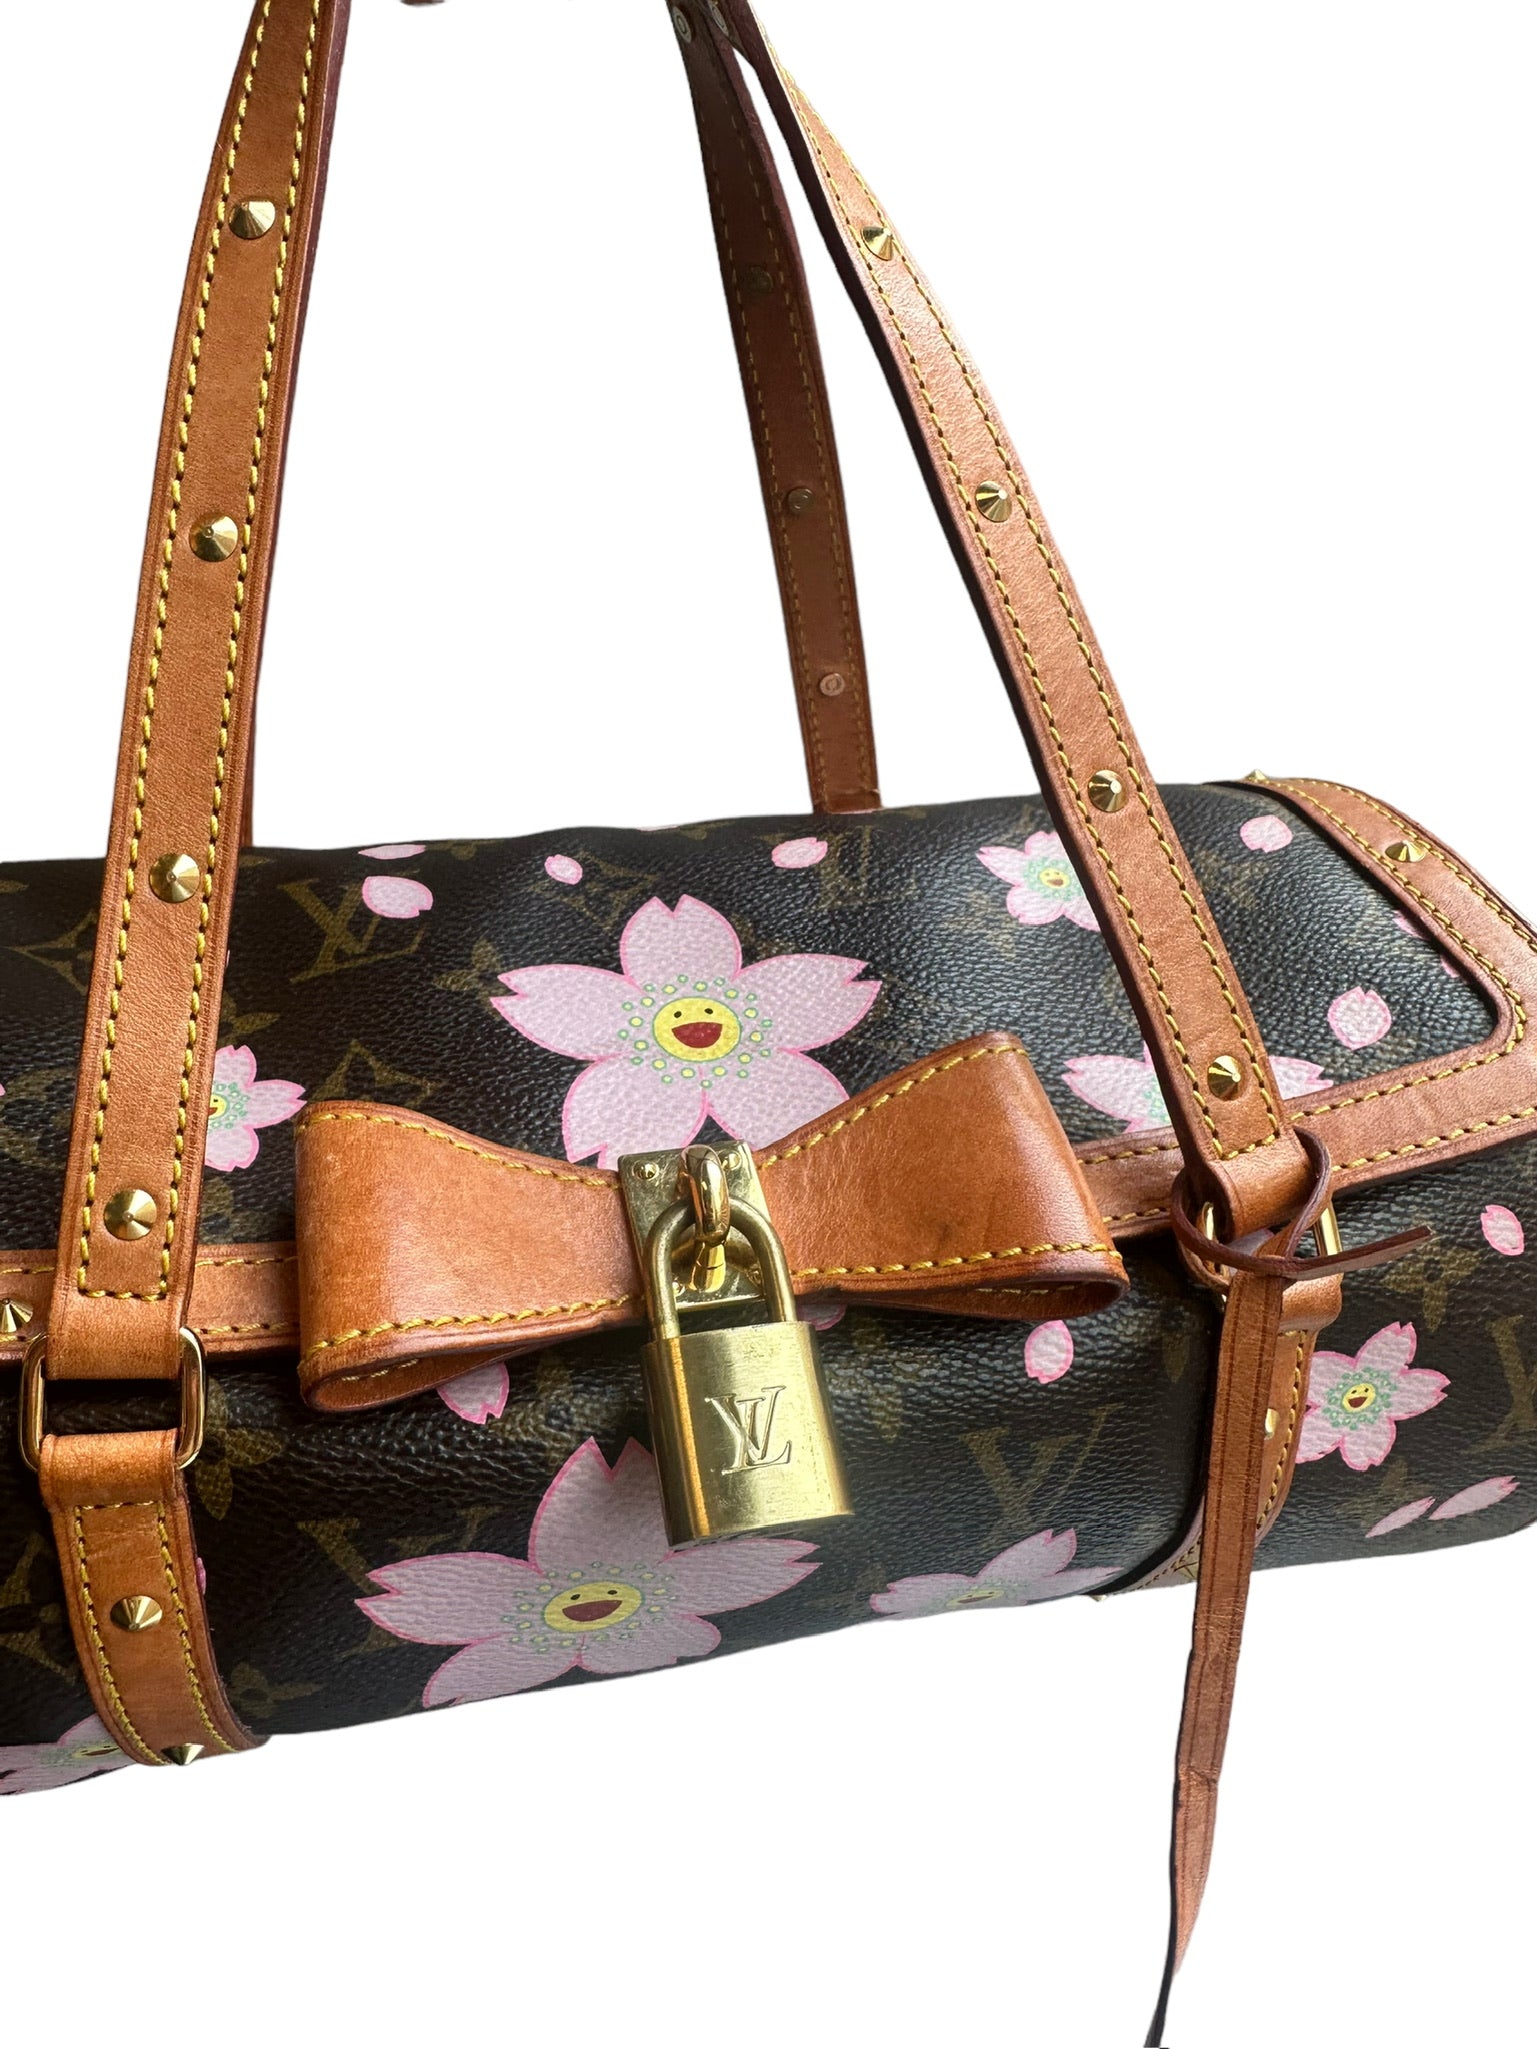 Louis Vuitton Monogram Canvas Limited Edition Cherry Blossom Papillon Bag  Louis Vuitton